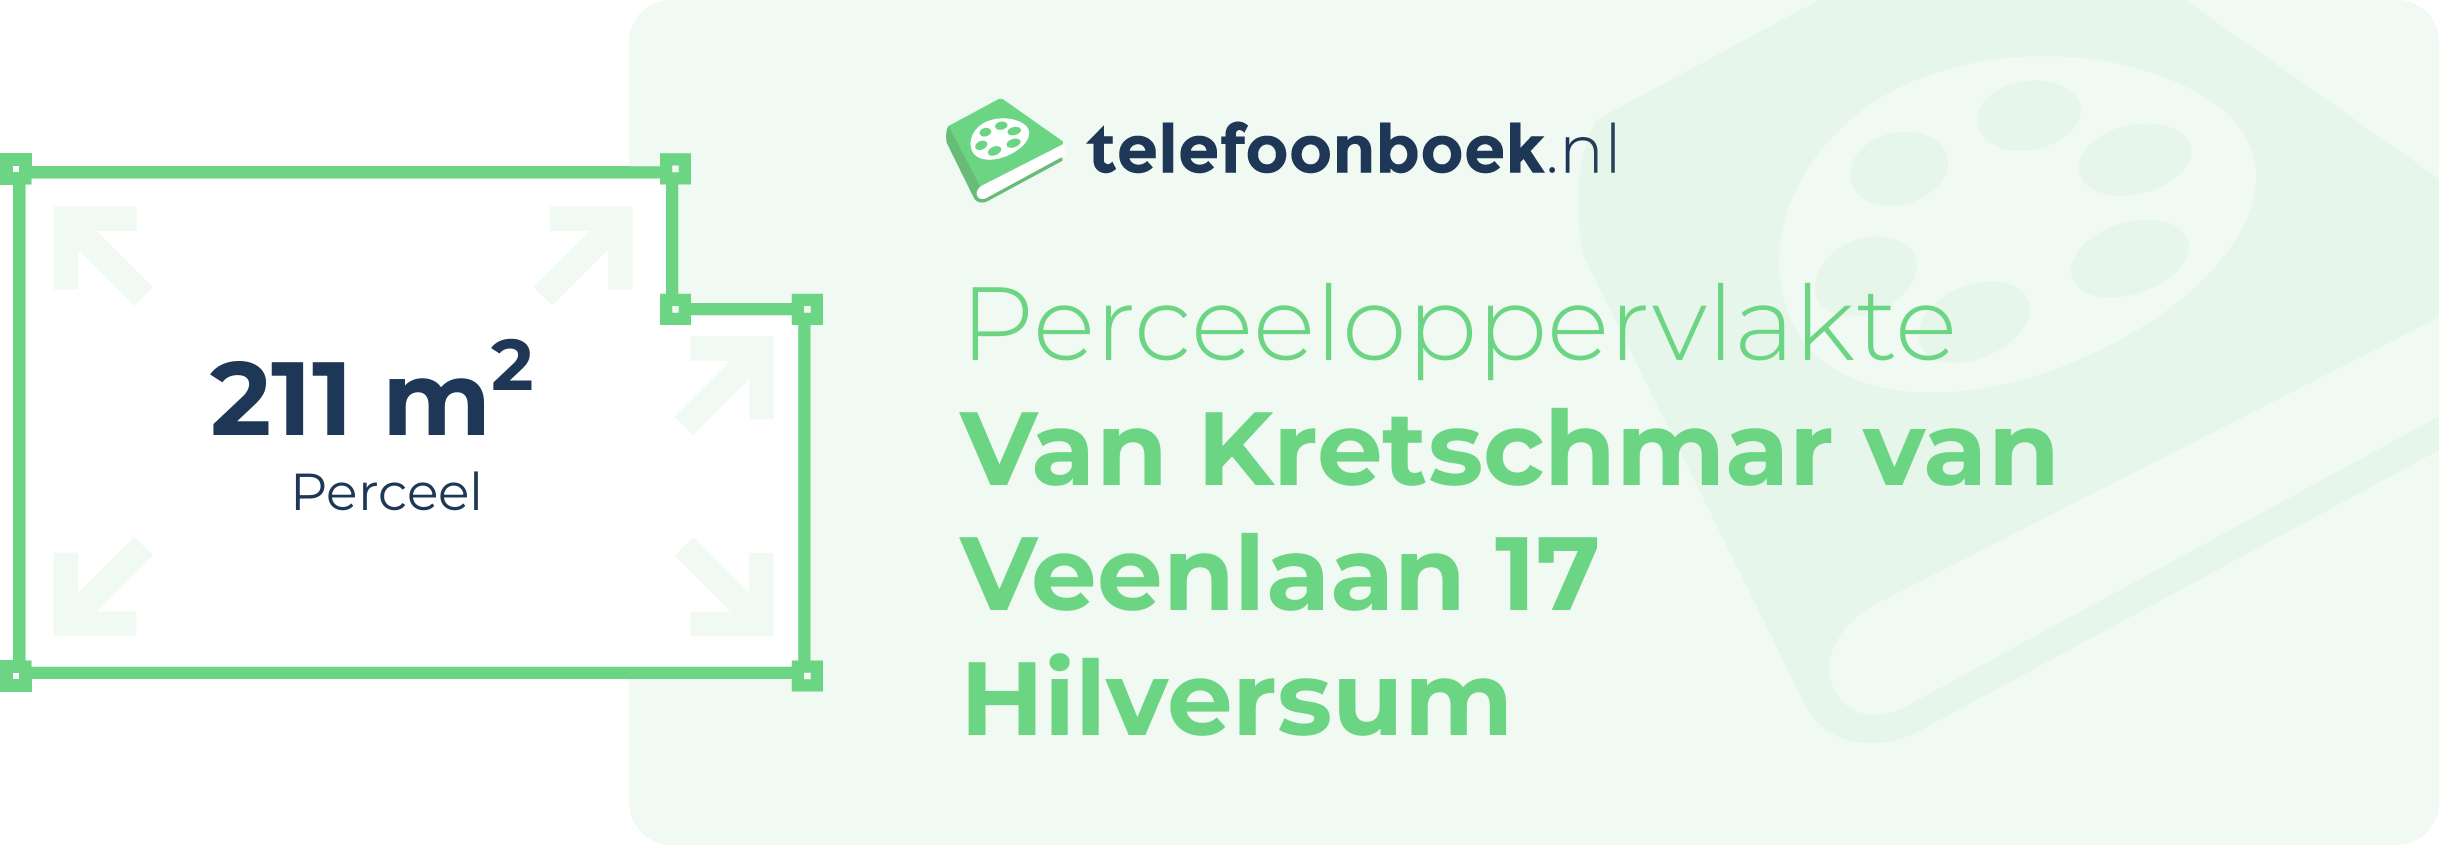 Perceeloppervlakte Van Kretschmar Van Veenlaan 17 Hilversum